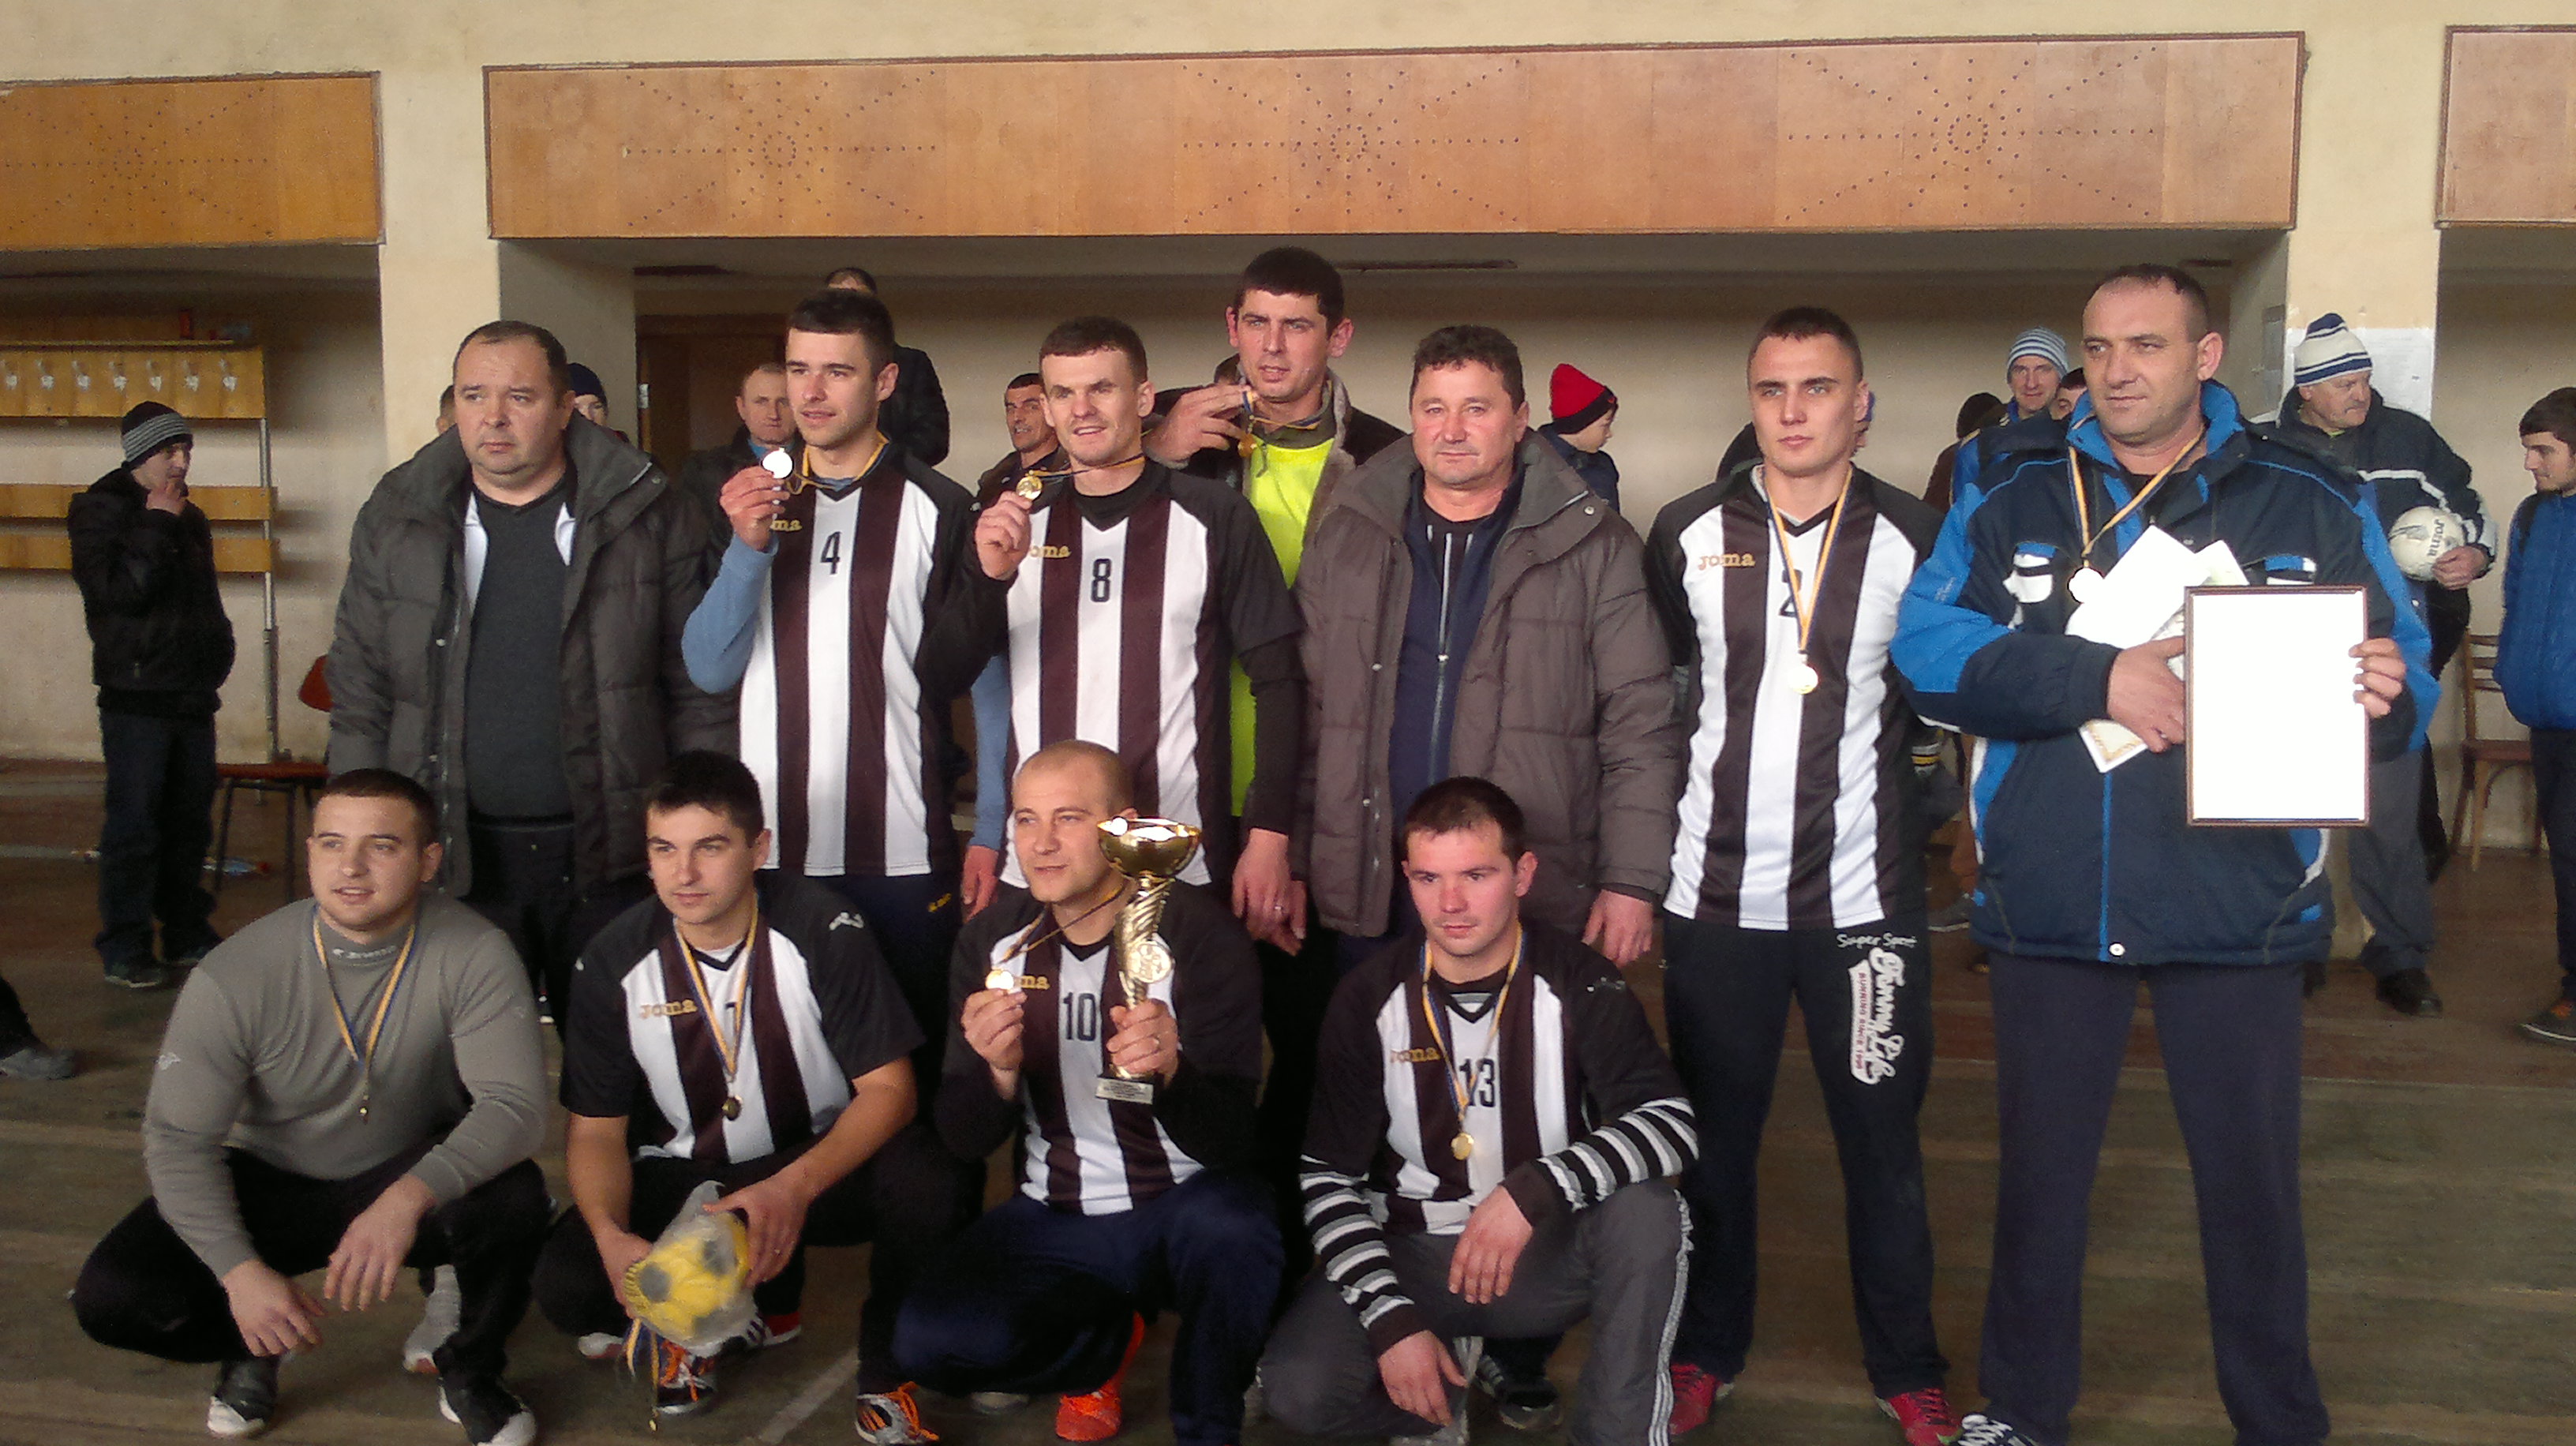 17 команд Виноградовского района приняли участие в турнире по мини-футболу, который прошел на базе спортивного комплекса «Тиса» в селе Пийтерфолво.